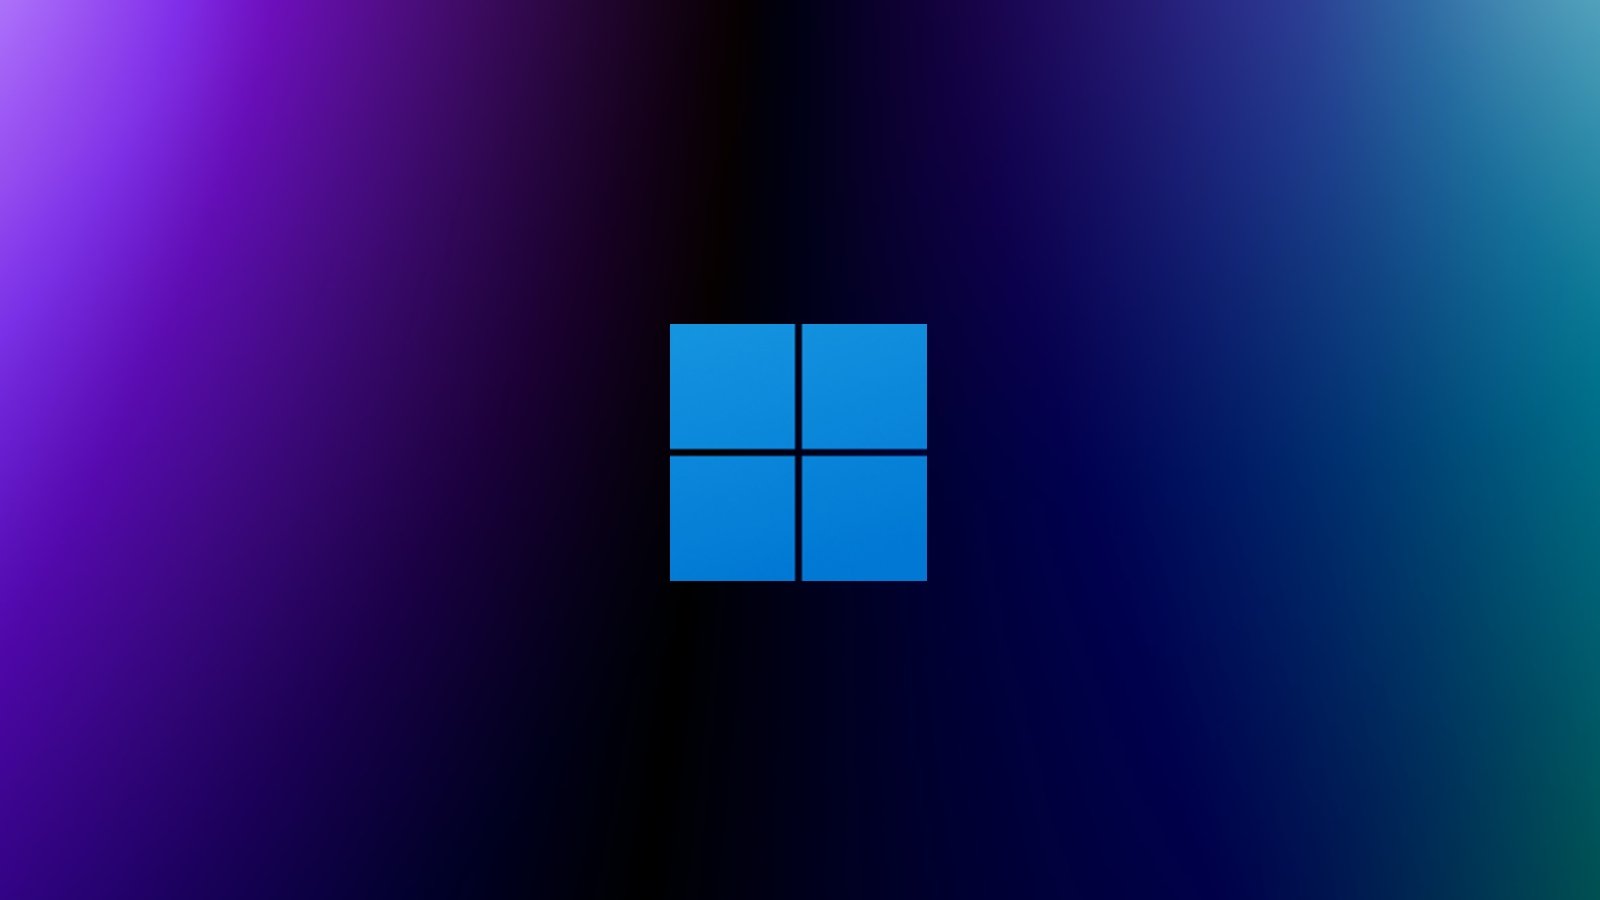 Tải về miễn phí Windows 11 mang đến bốn bộ sưu tập mới cho màn hình ...: \